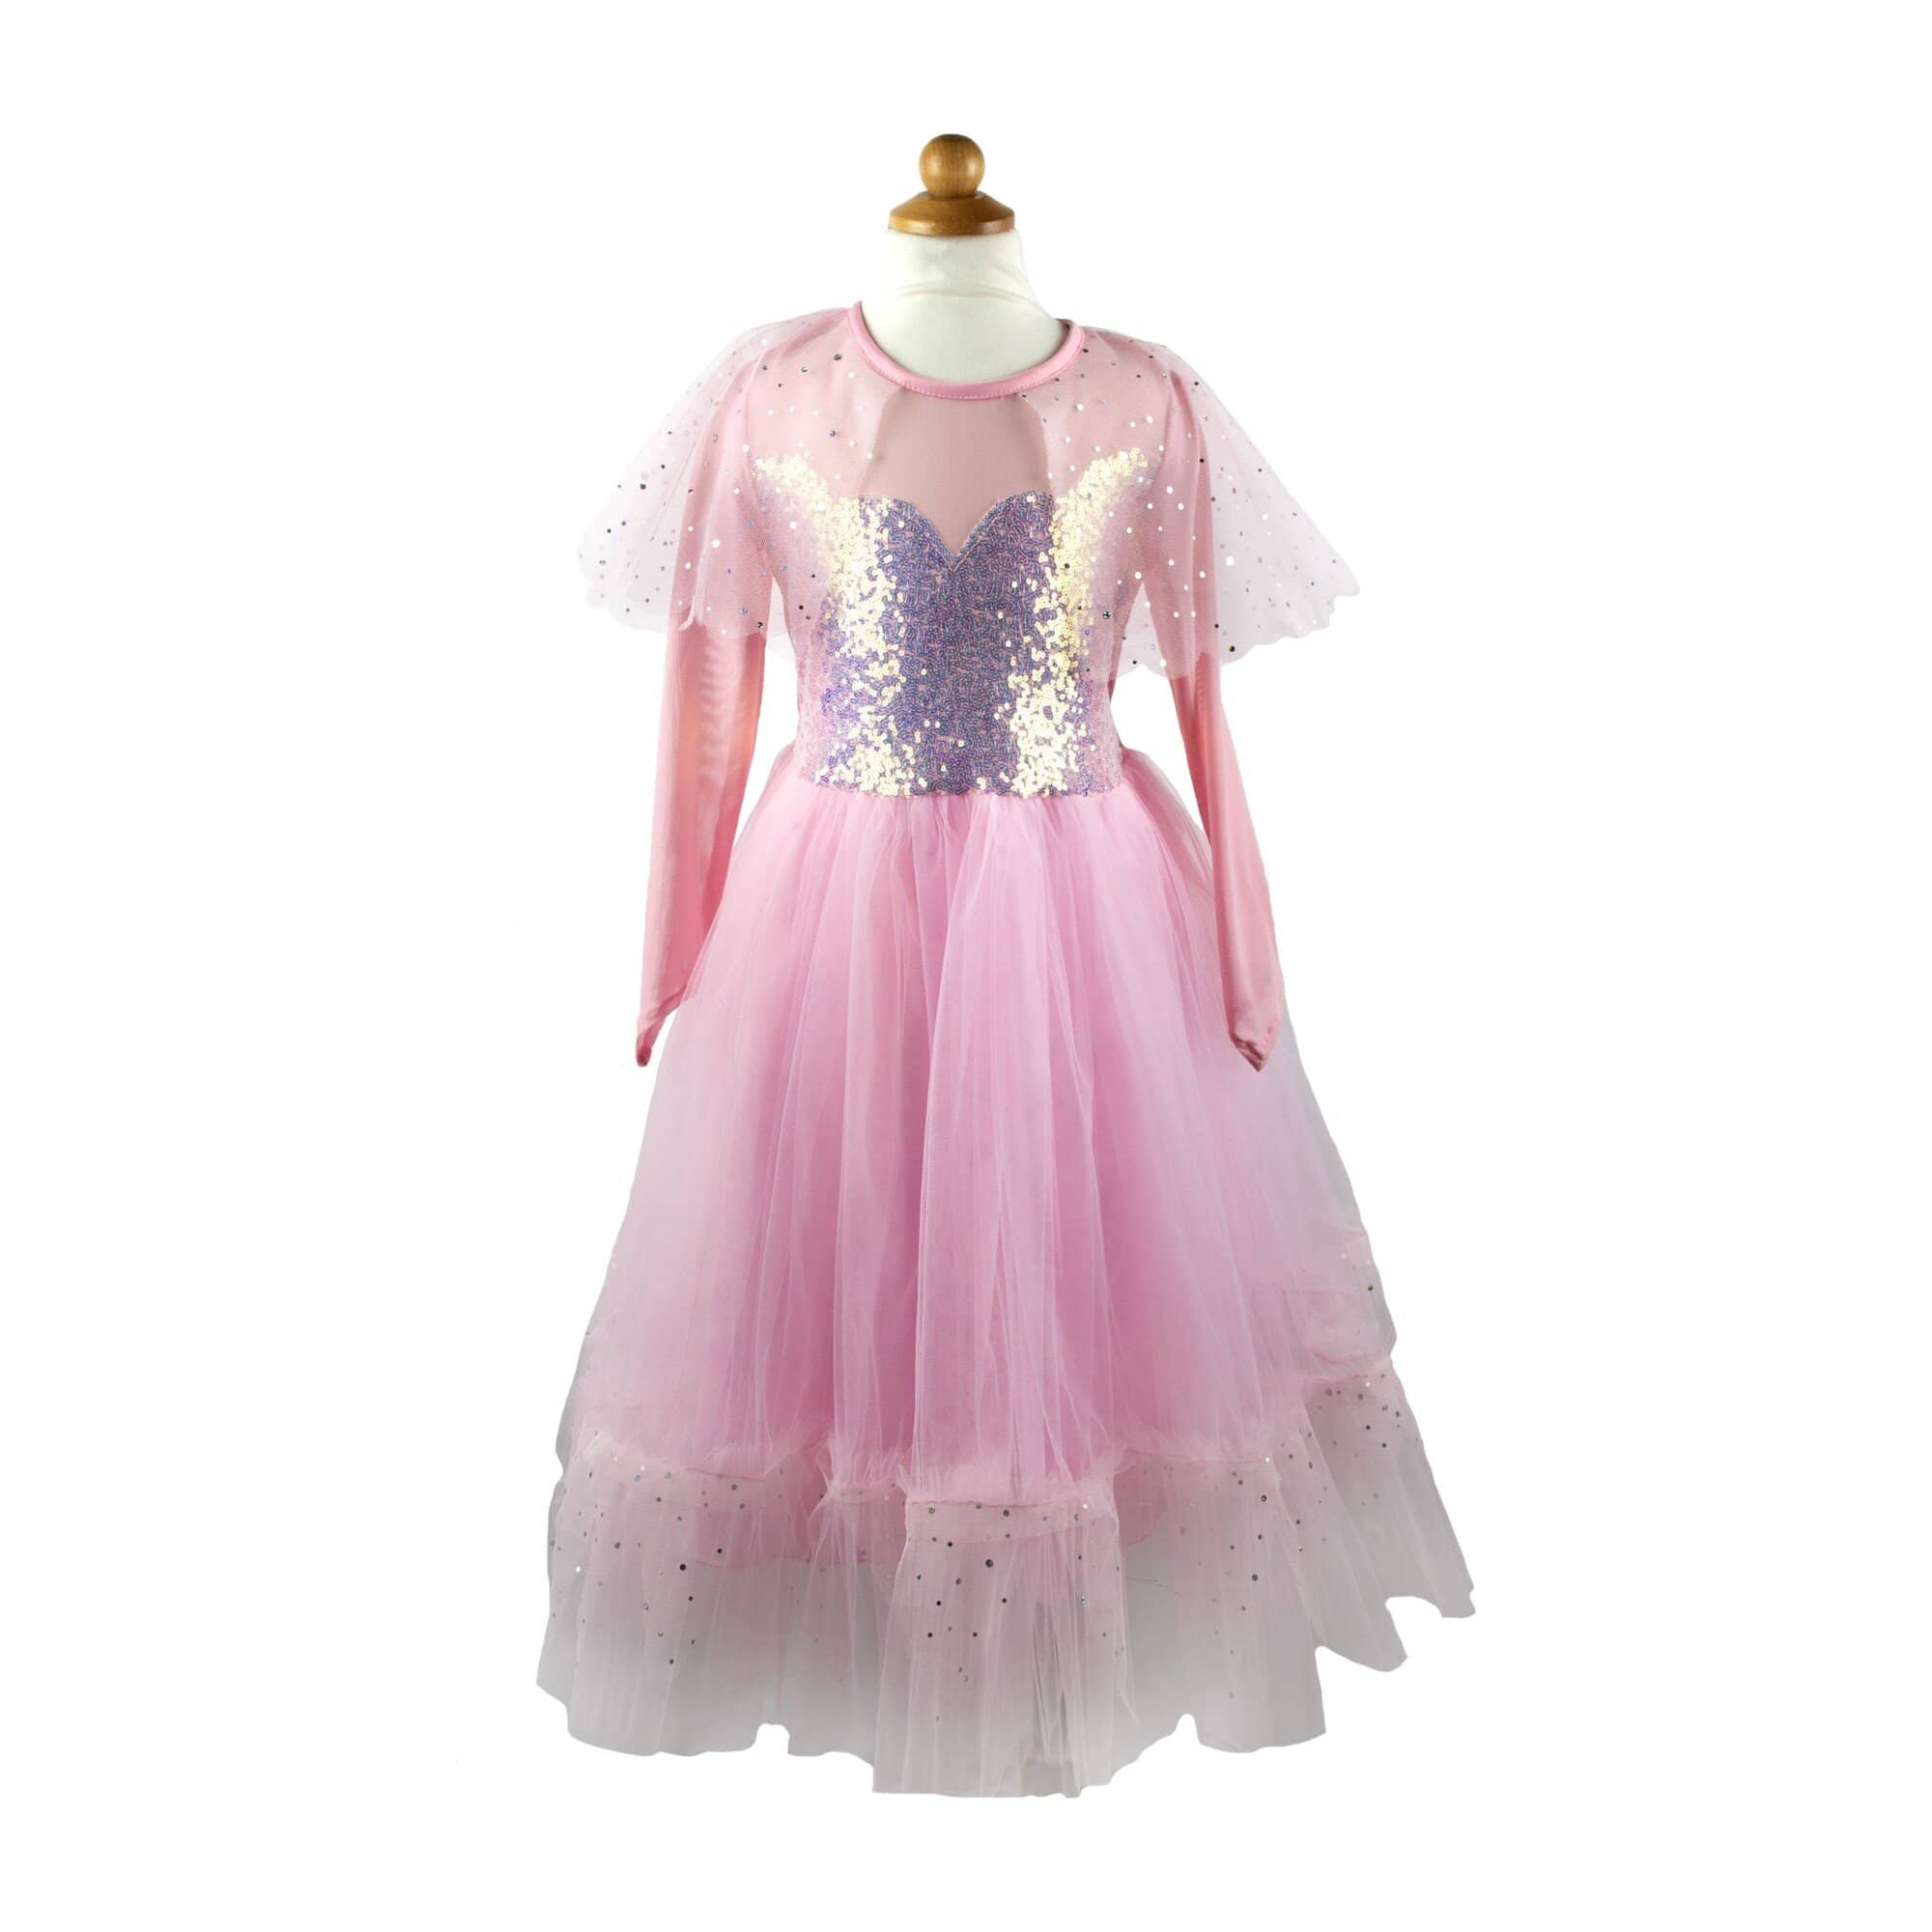 Elegant In Pink Dress Imaginative Play